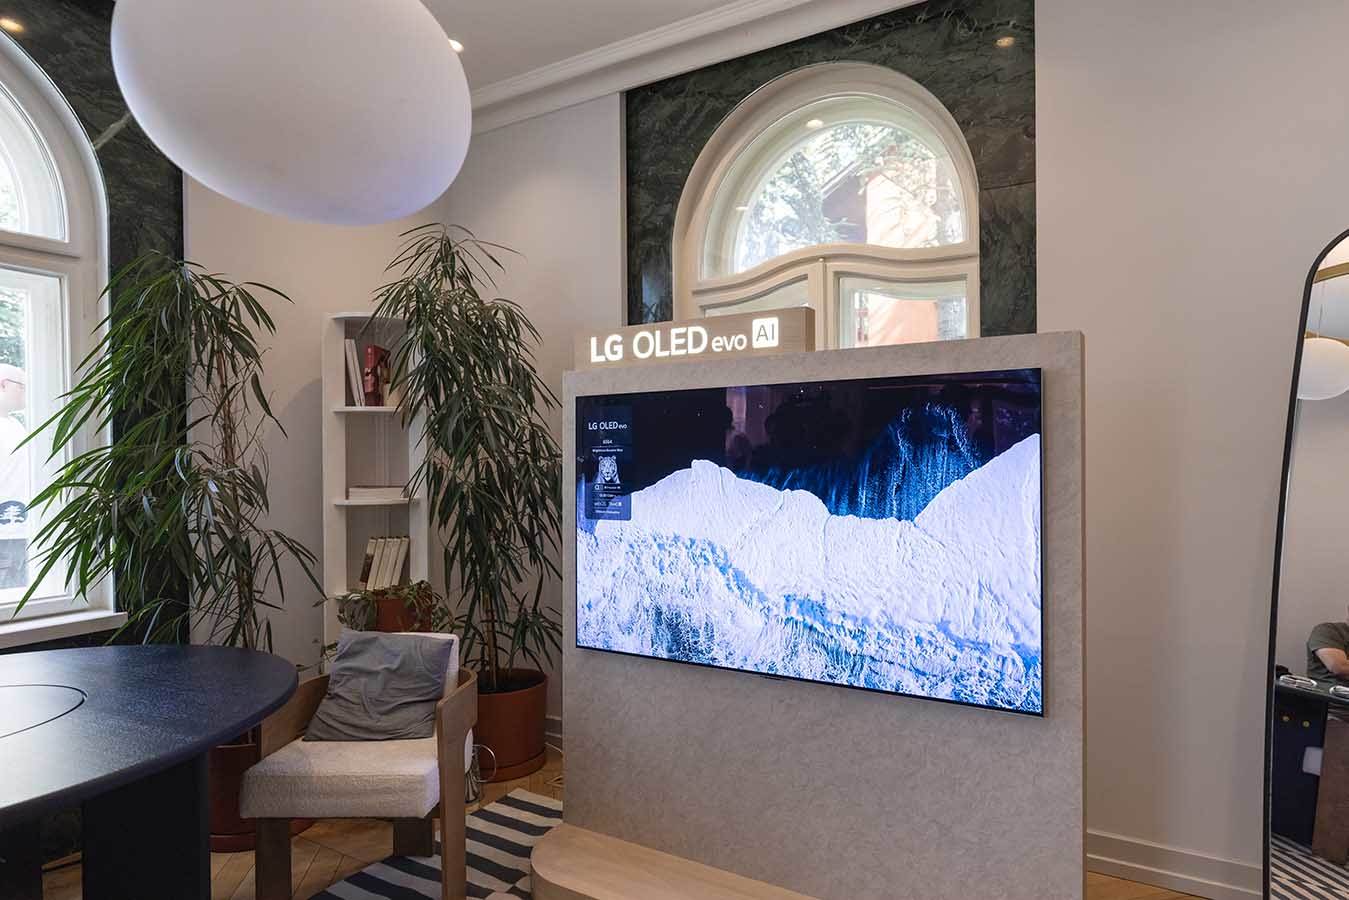  Najnoviji LG OLED televizor 